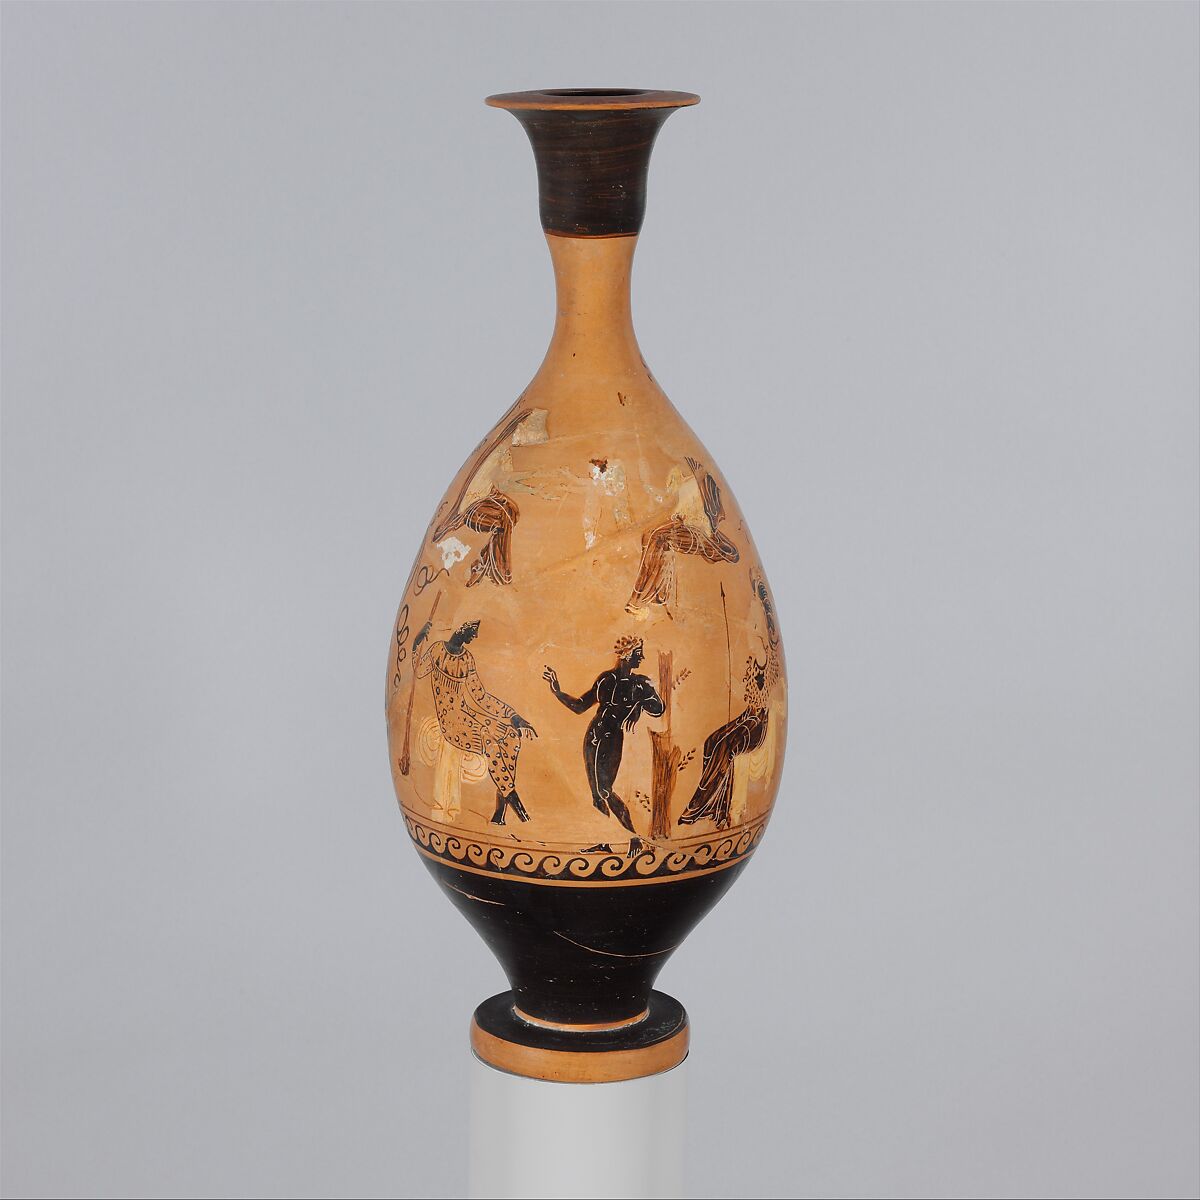 Terracotta lekythos (oil flask), Pagenstecher Class, Terracotta, Greek, South Italian, probably Paestan